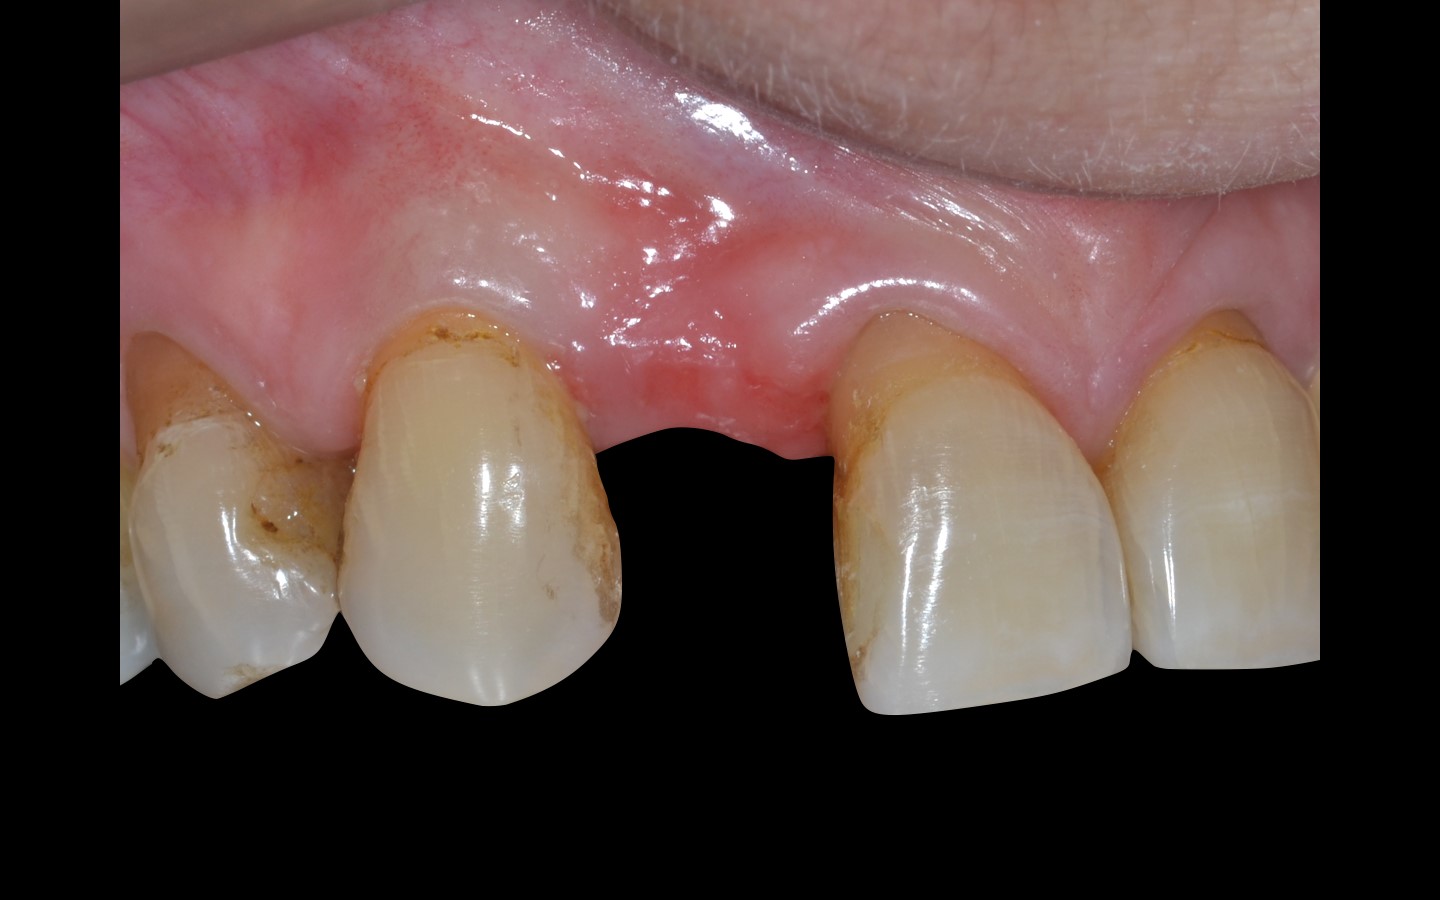 image3 - Reabilitação dento-alveolar com implante Arcsys, enxerto conjuntivo e substituto ósseo Nanosynt